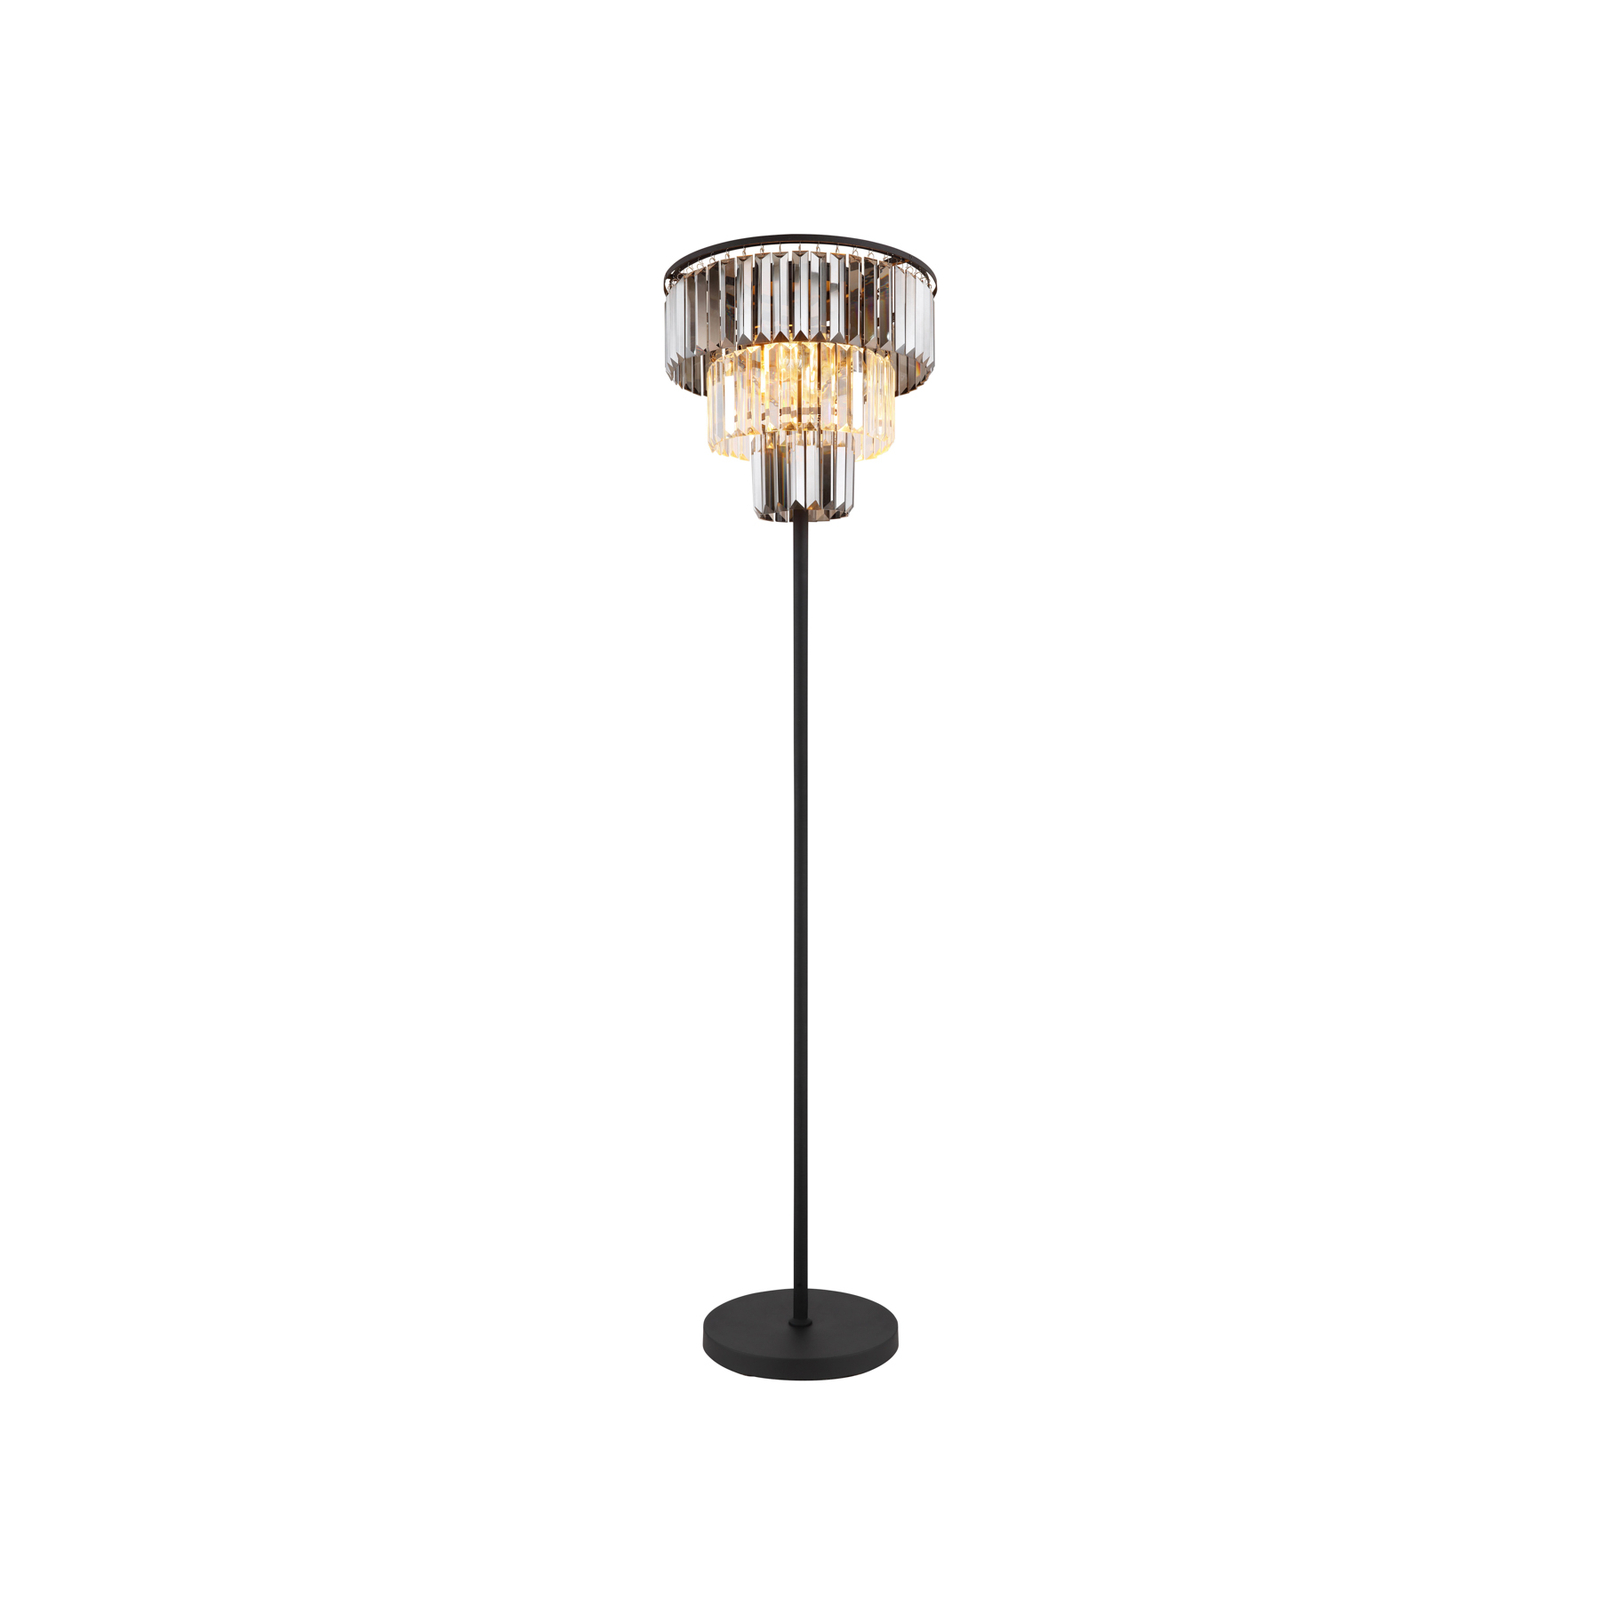 Naxis gulvlampe, svart/røykgrå, høyde 160 cm, krystall